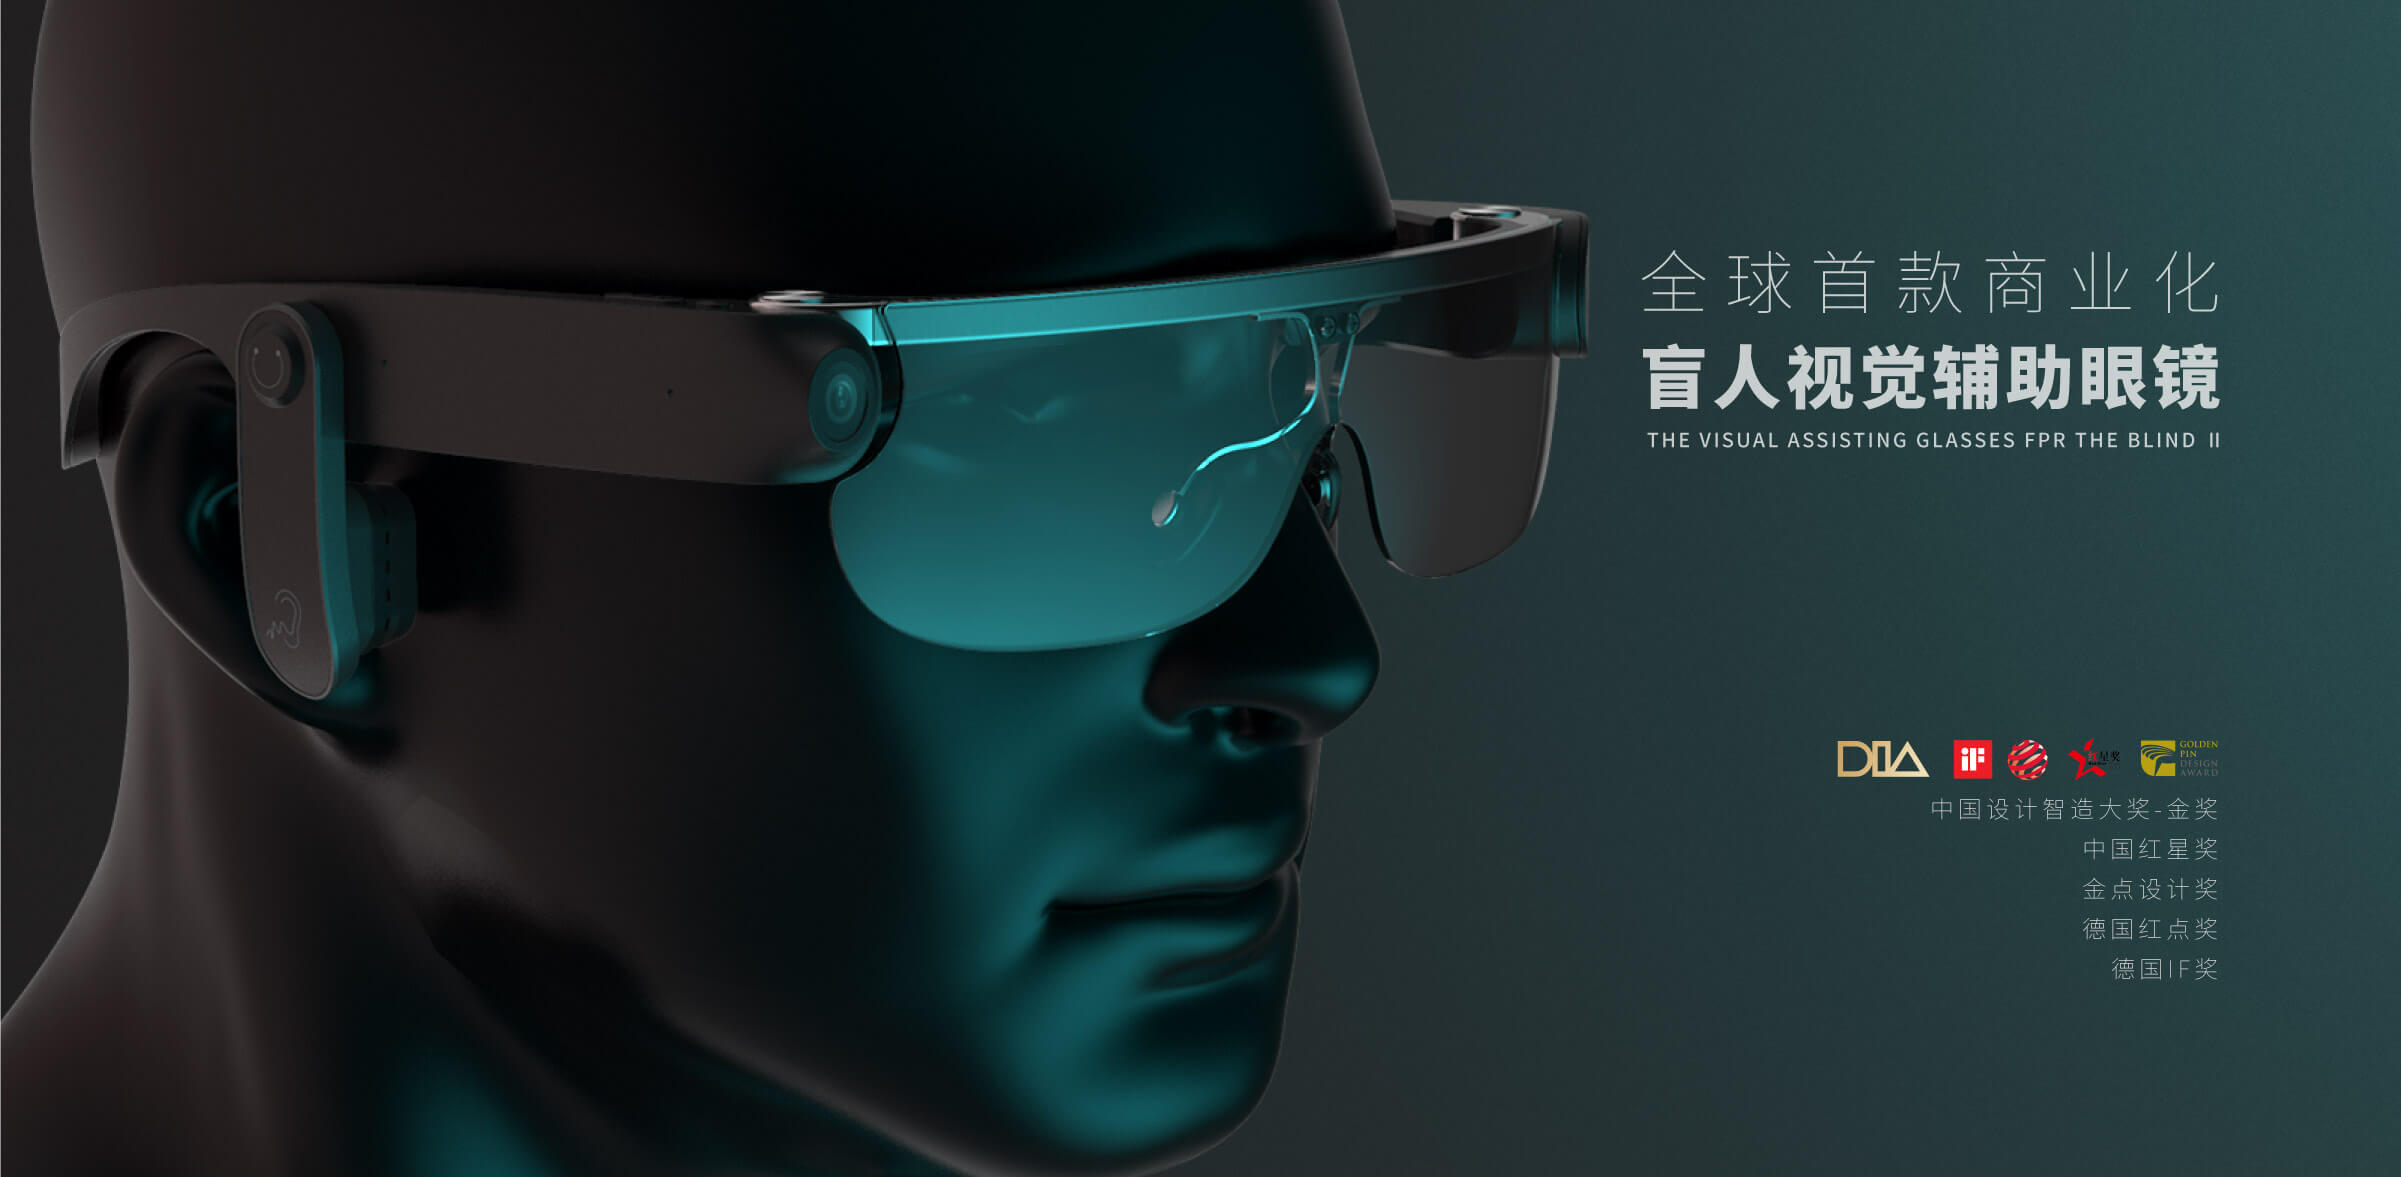 盲人辅助眼睛-杭州医疗产品设计